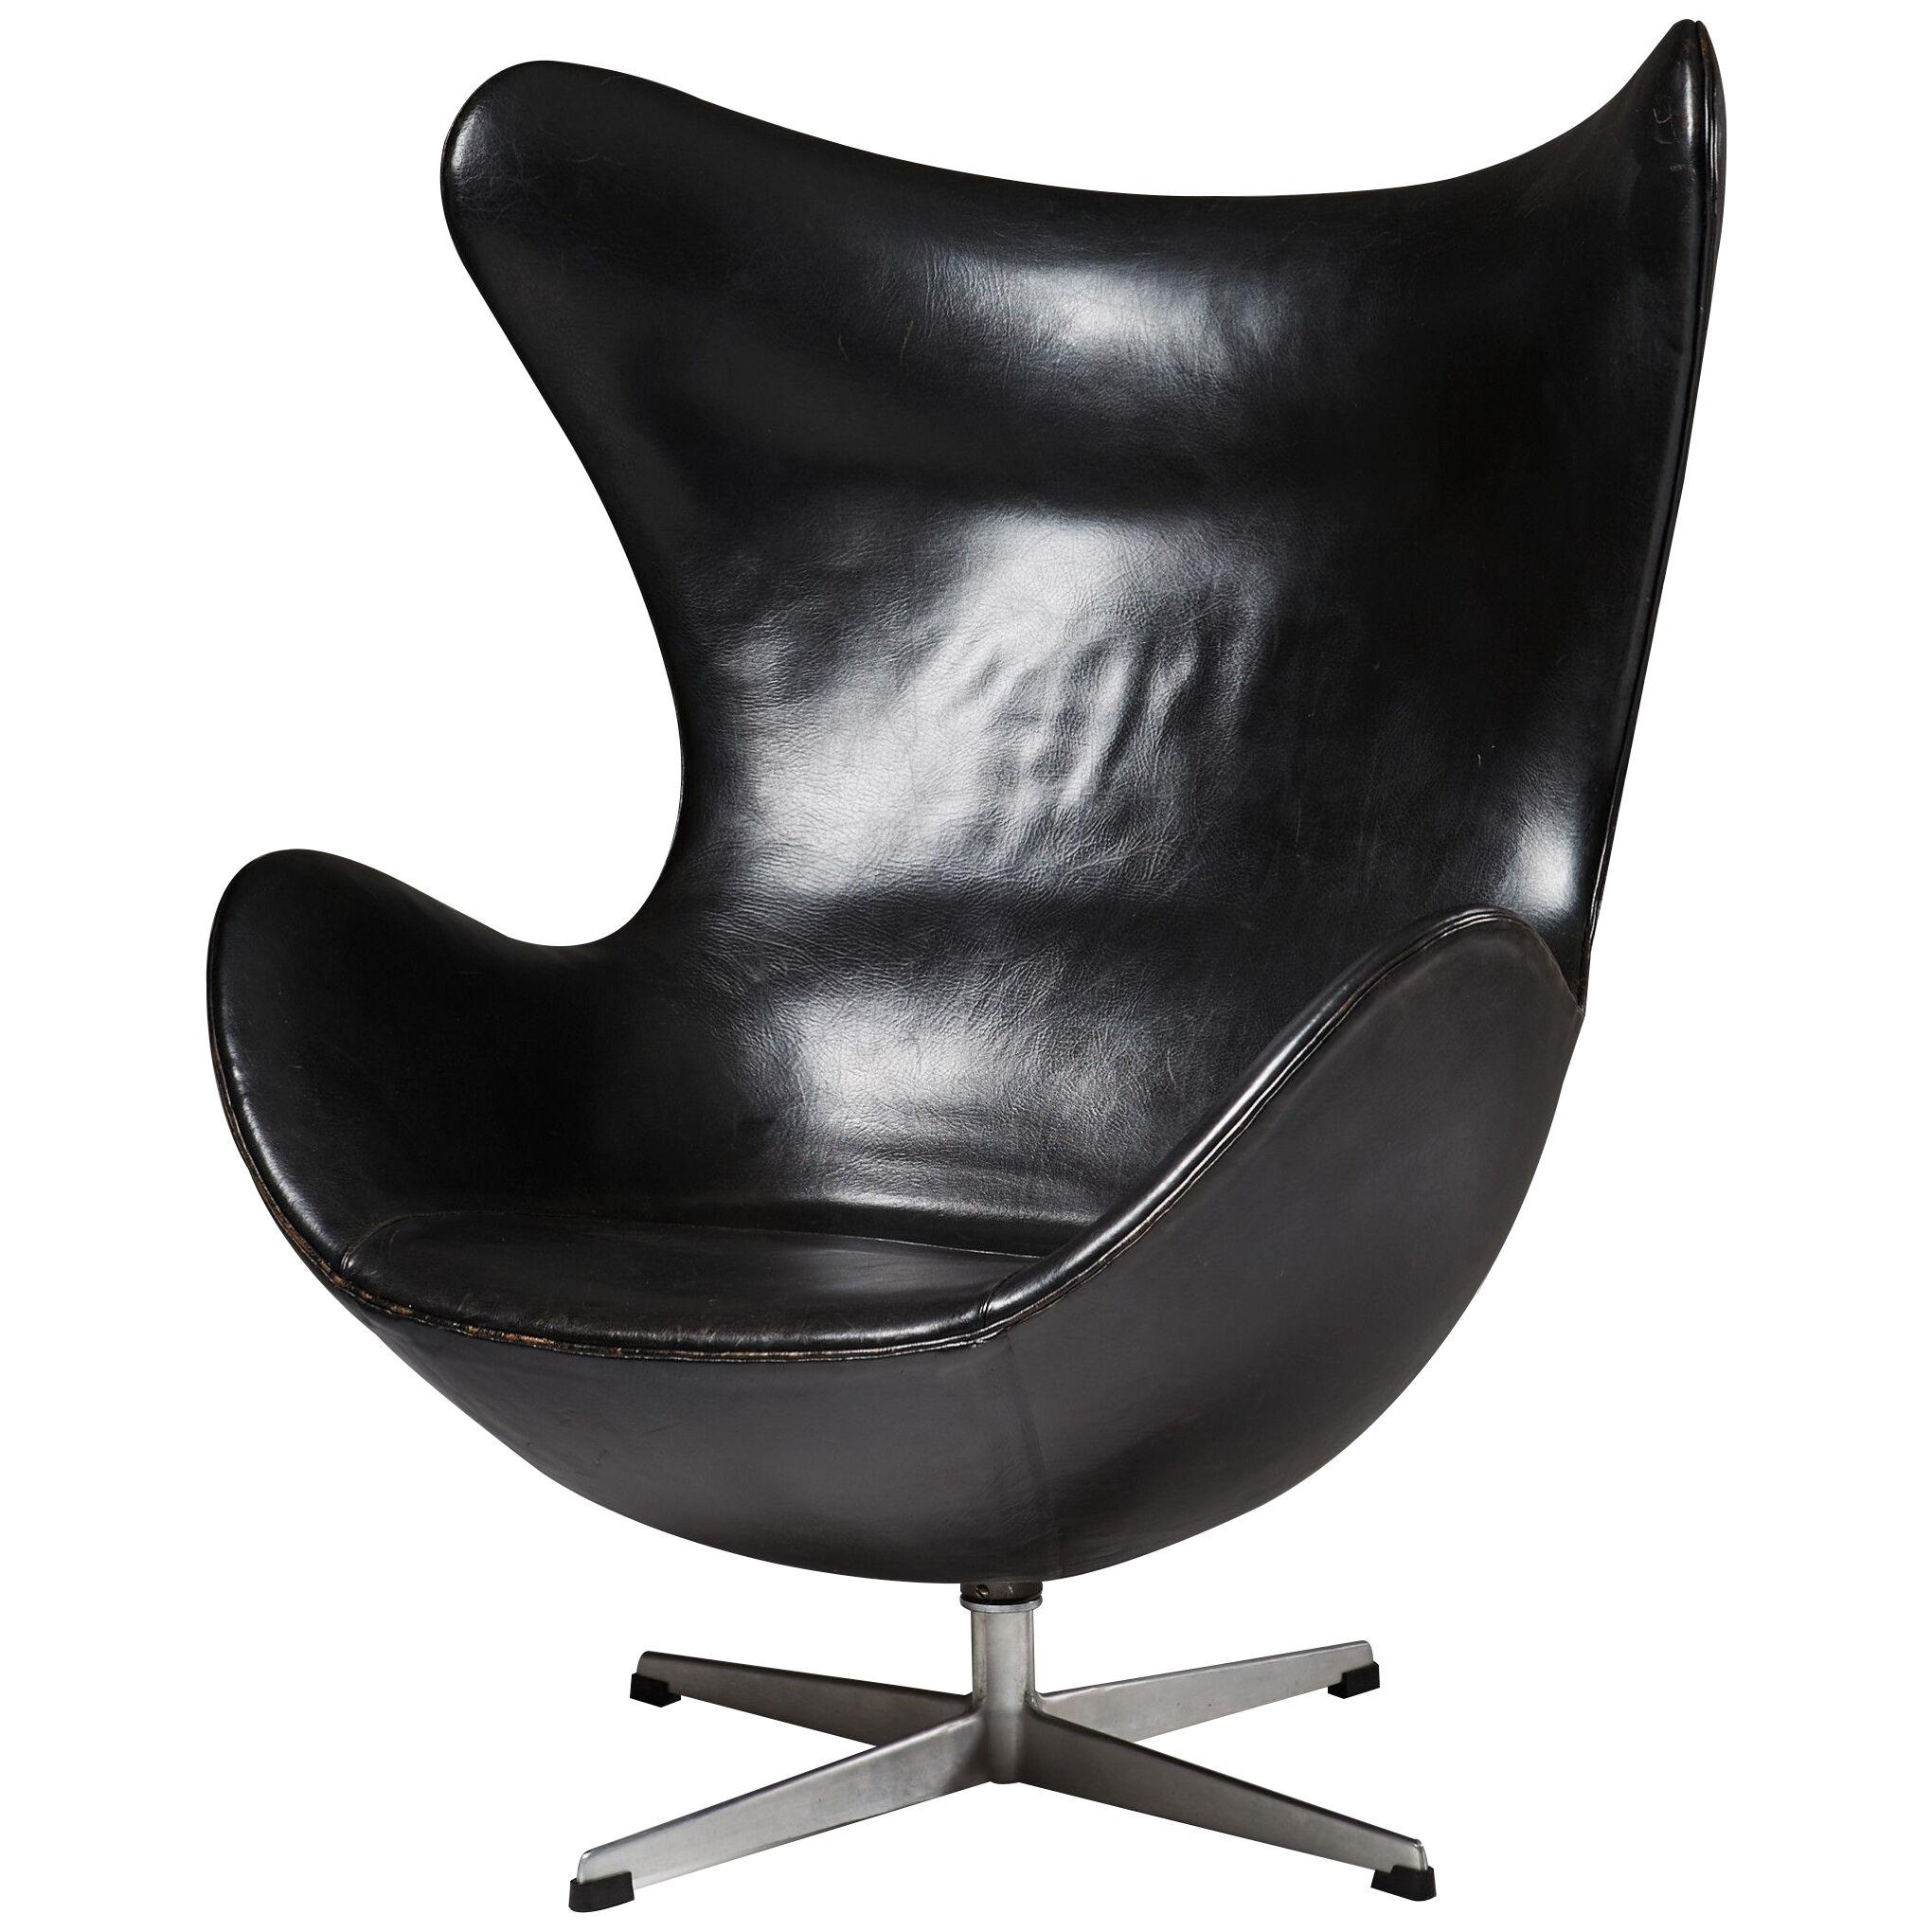 Armchair “Egg chair” designed by Arne Jacobsen for Fritz Hansen, Denmark. 1958.